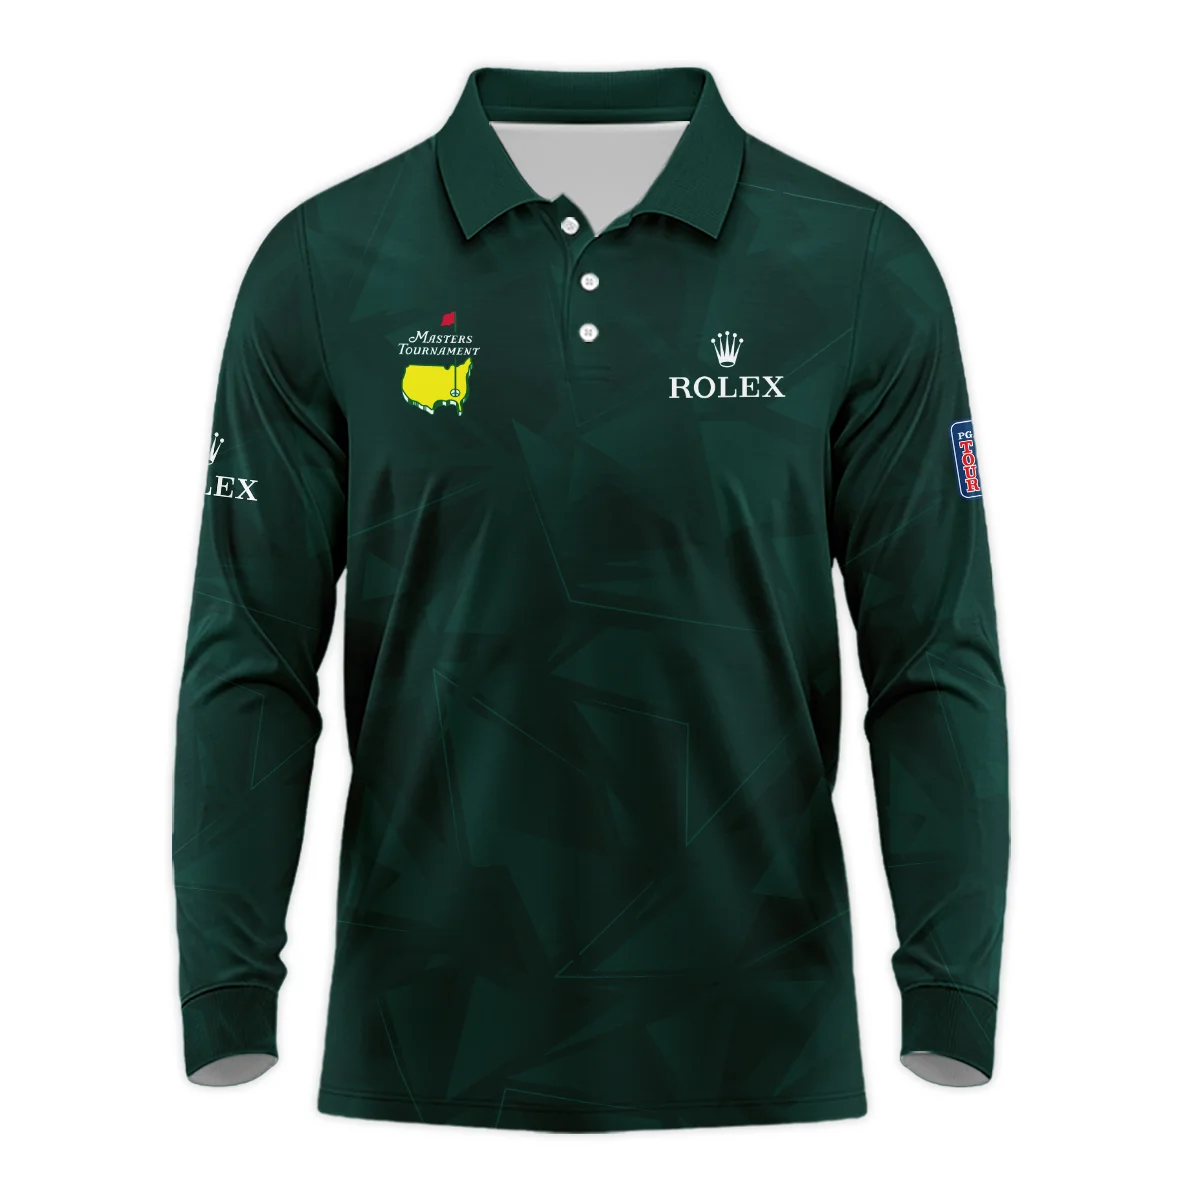 Dark Green Abstract Sport Masters Tournament Rolex Zipper Hoodie Shirt Style Classic Zipper Hoodie Shirt